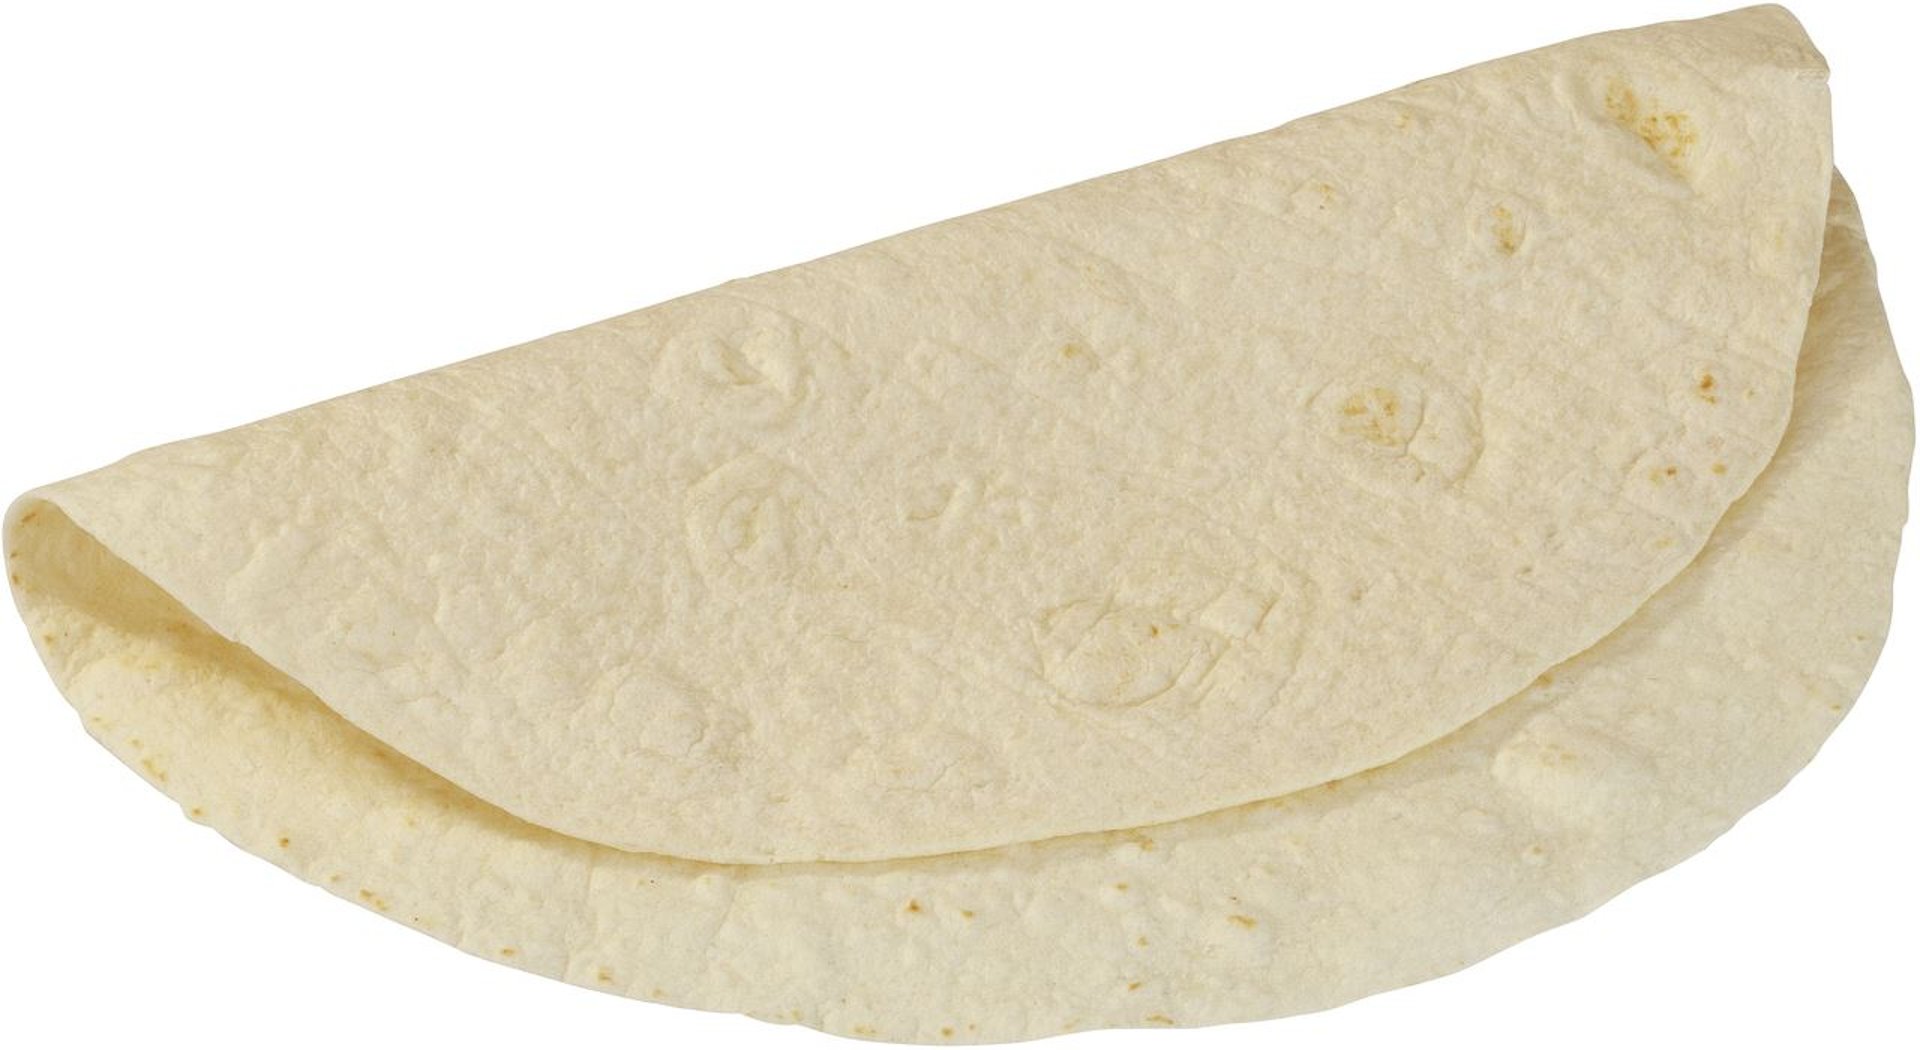 Edna - Tortilla Wrap Ø 30 cm tiefgefroren, fertig gebacken 90 Stück à 89 g - 8,01 kg Karton